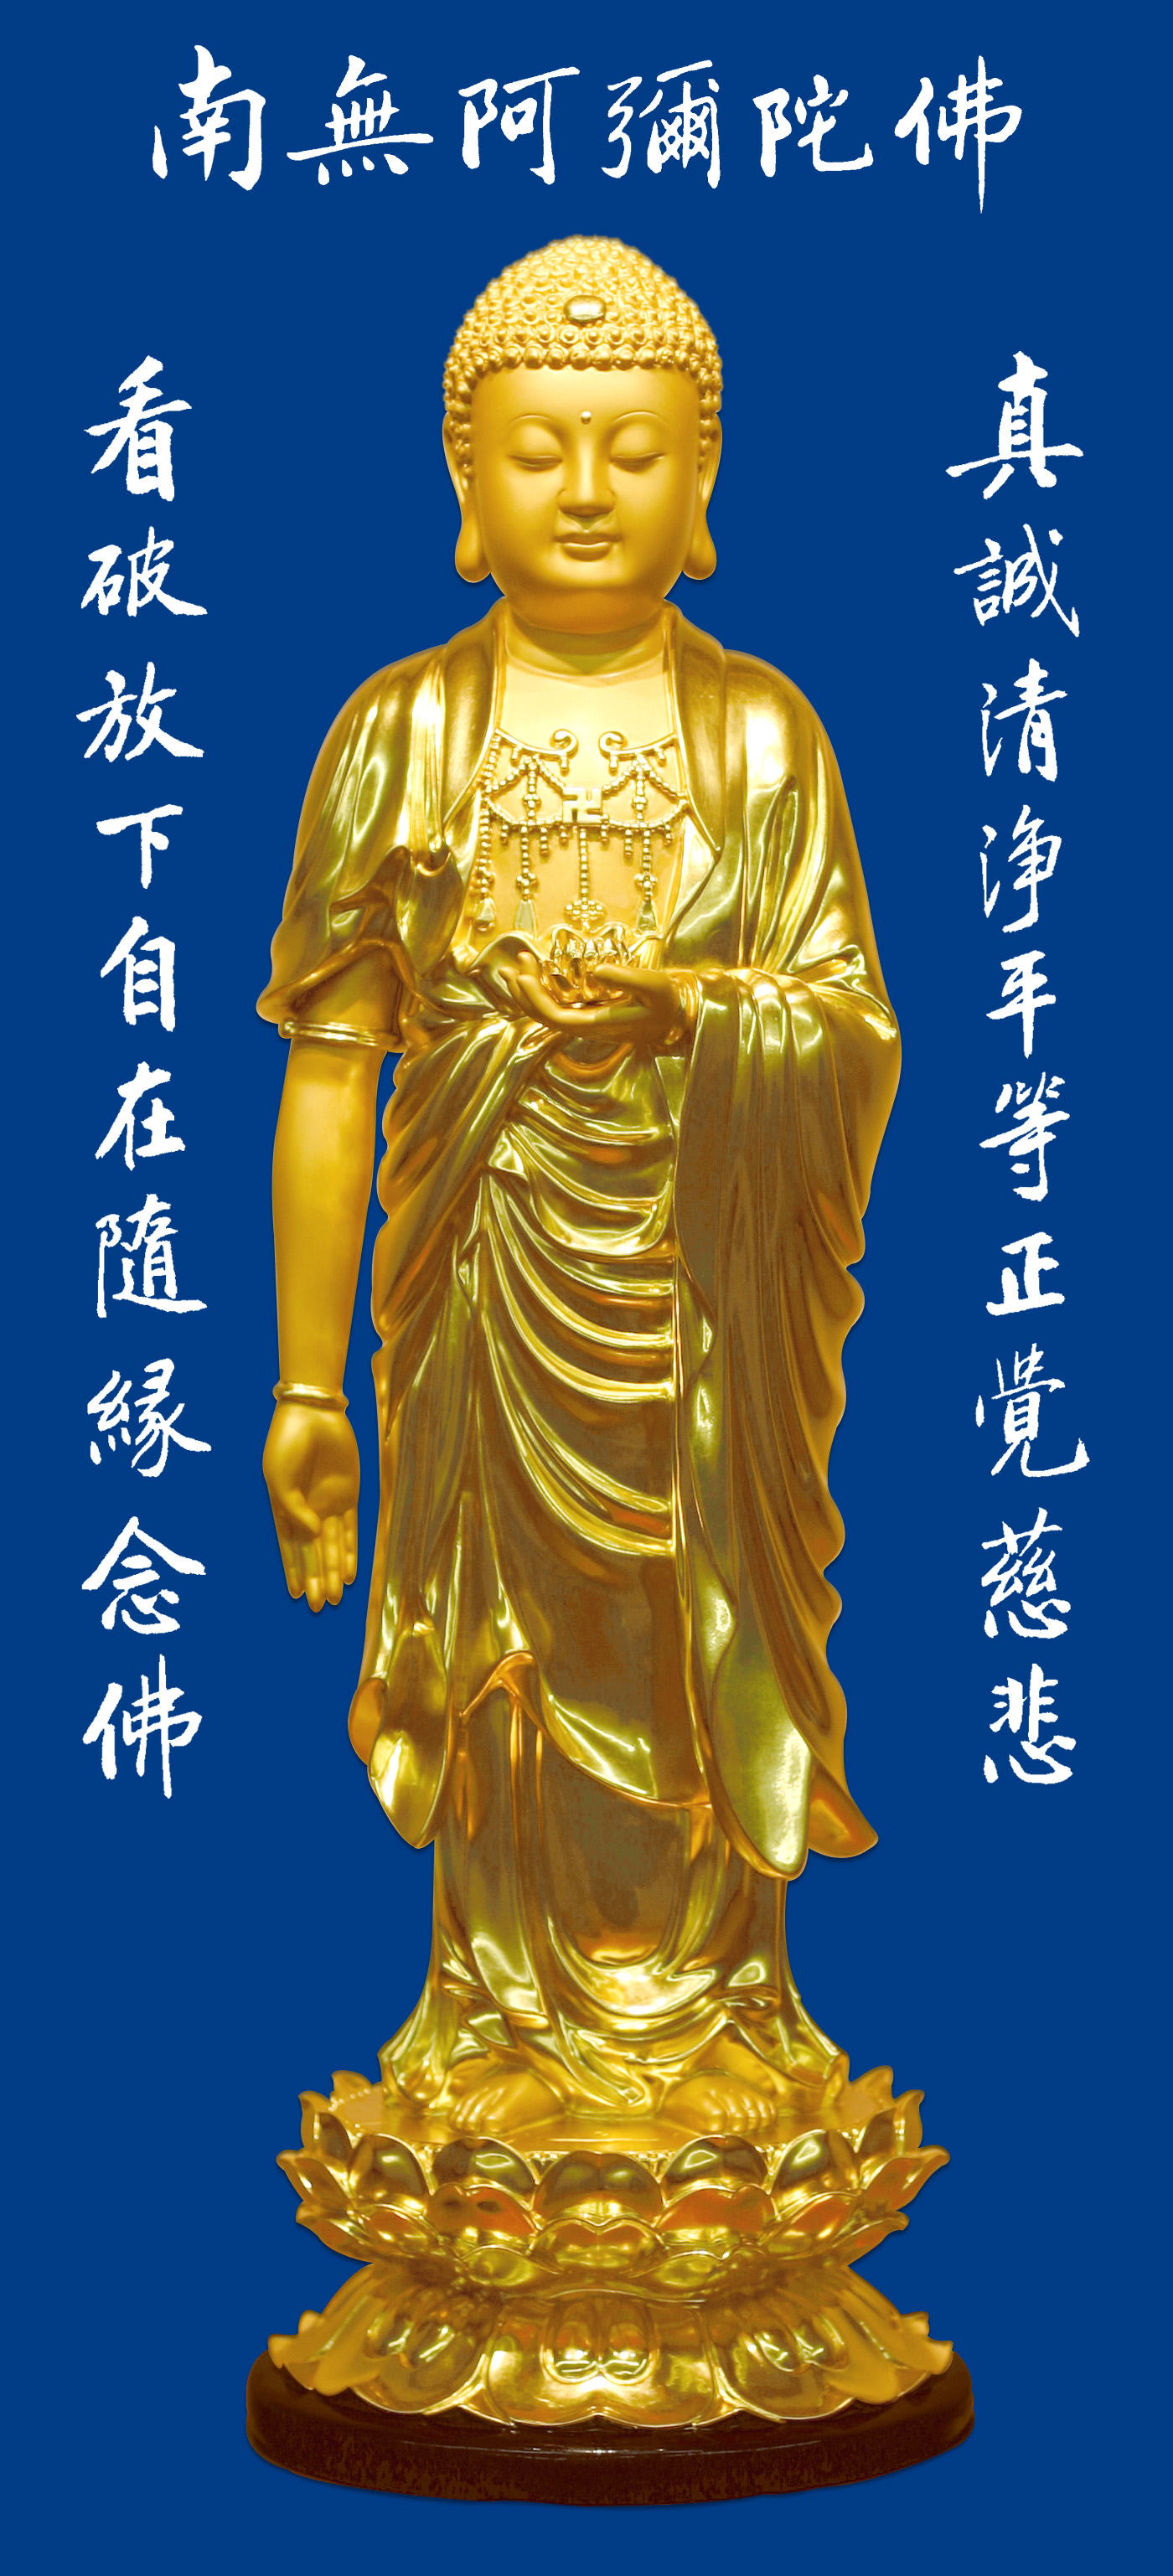 多張大張阿彌陀佛和西方三聖像